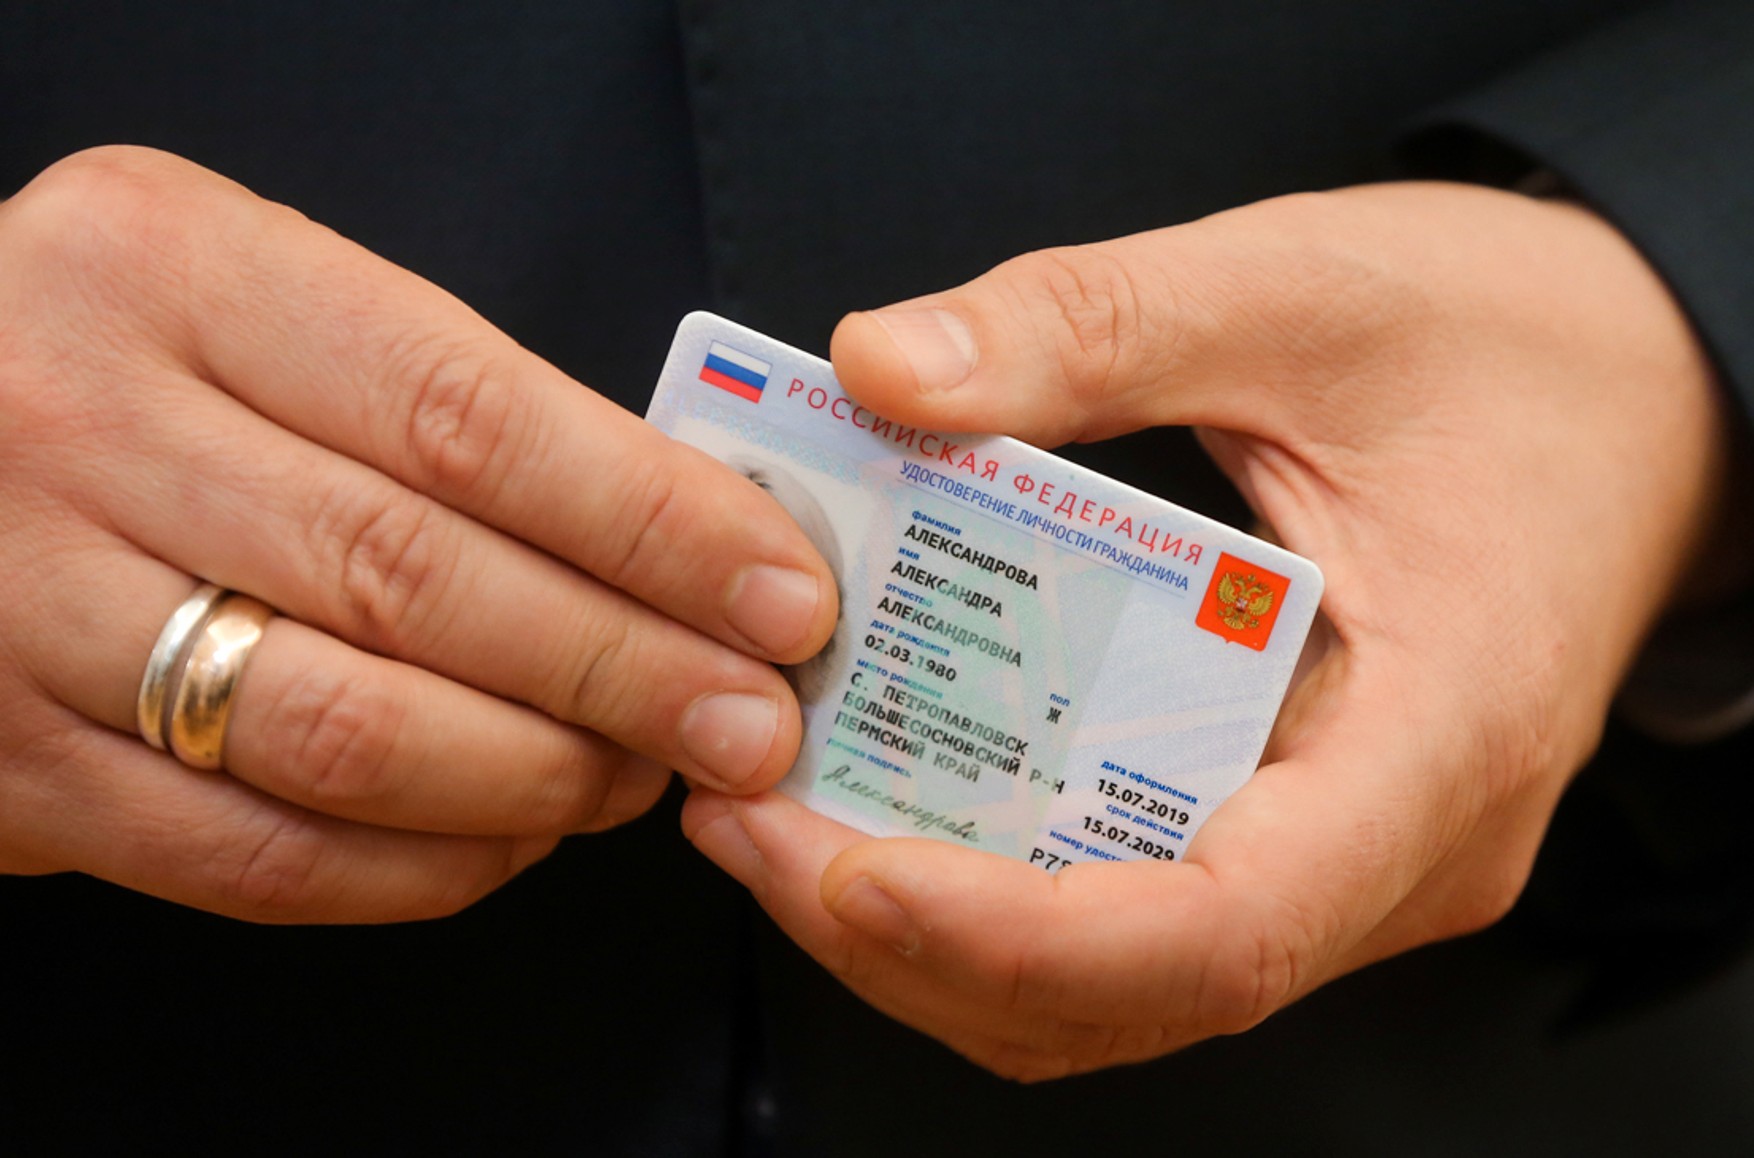 В России заморозили проект электронных паспортов из-за финансовых проблем, дефицита чипов и пластика — Forbes